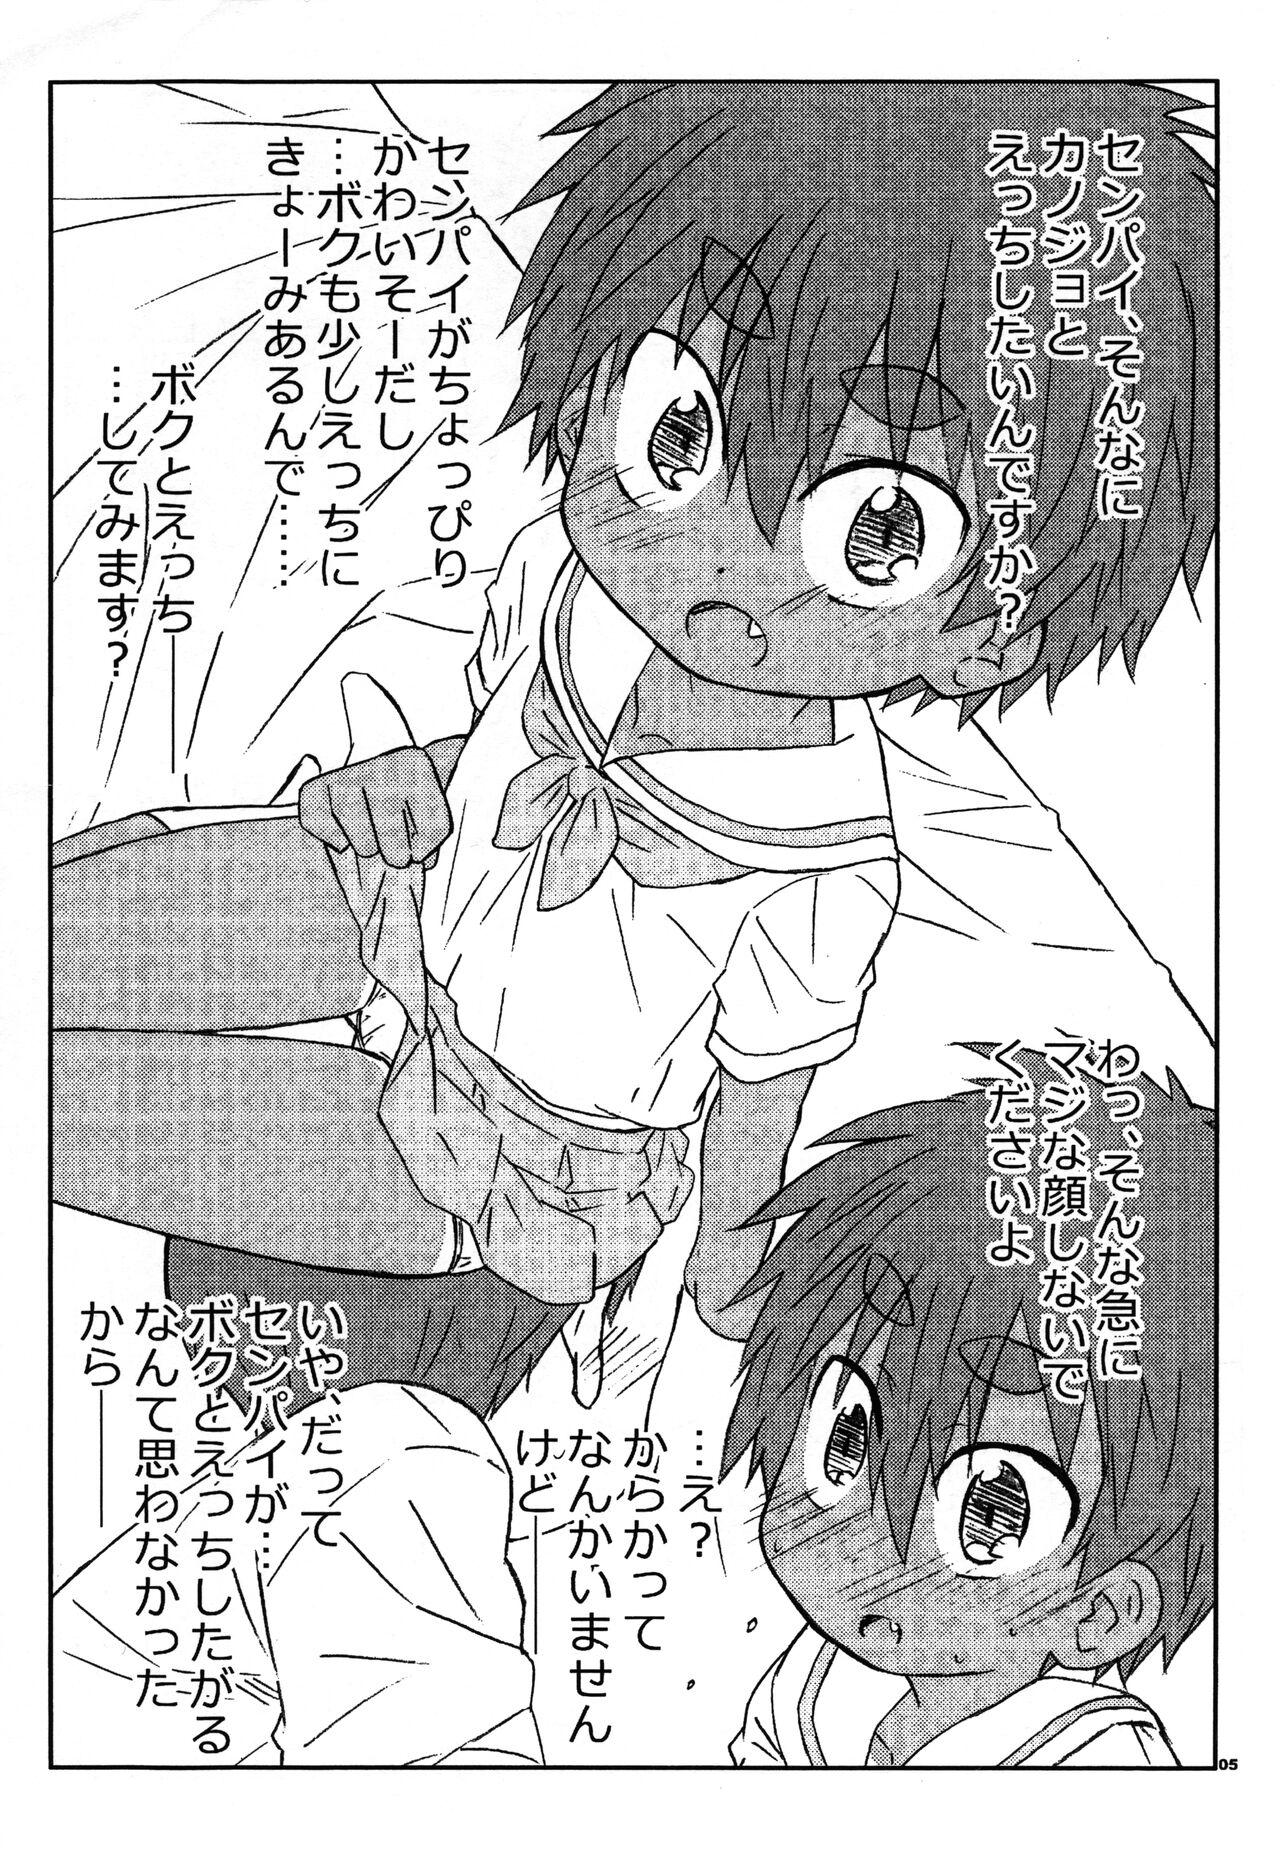 Polla Senpai no koto nante Zenzen Suki ja nai desu kara! - Original Passion - Page 4